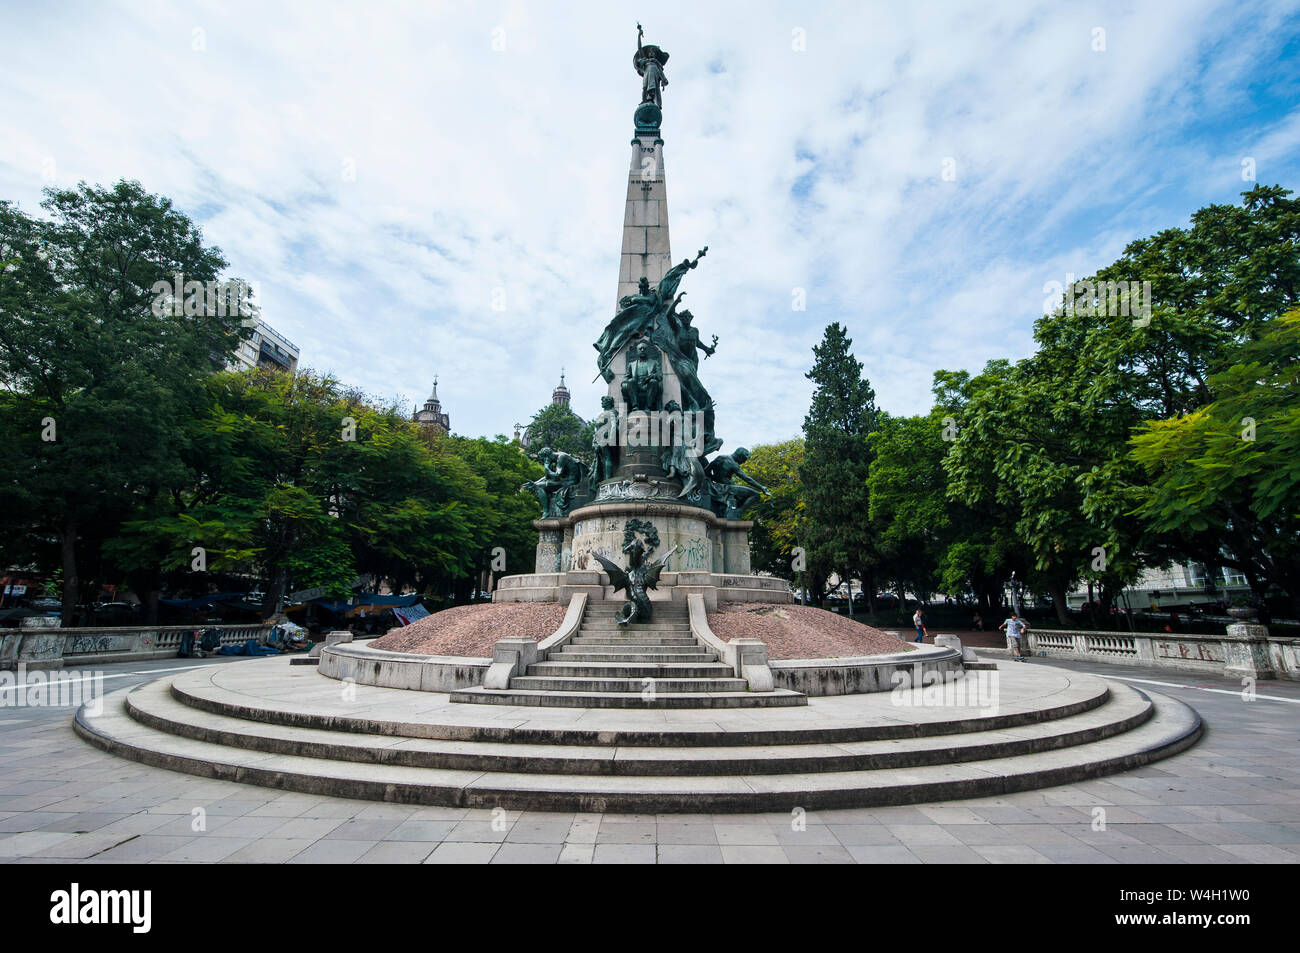 Statue sur une place devant la cathédrale de Porto Alegre, Rio Grande do Sul, Brésil Banque D'Images